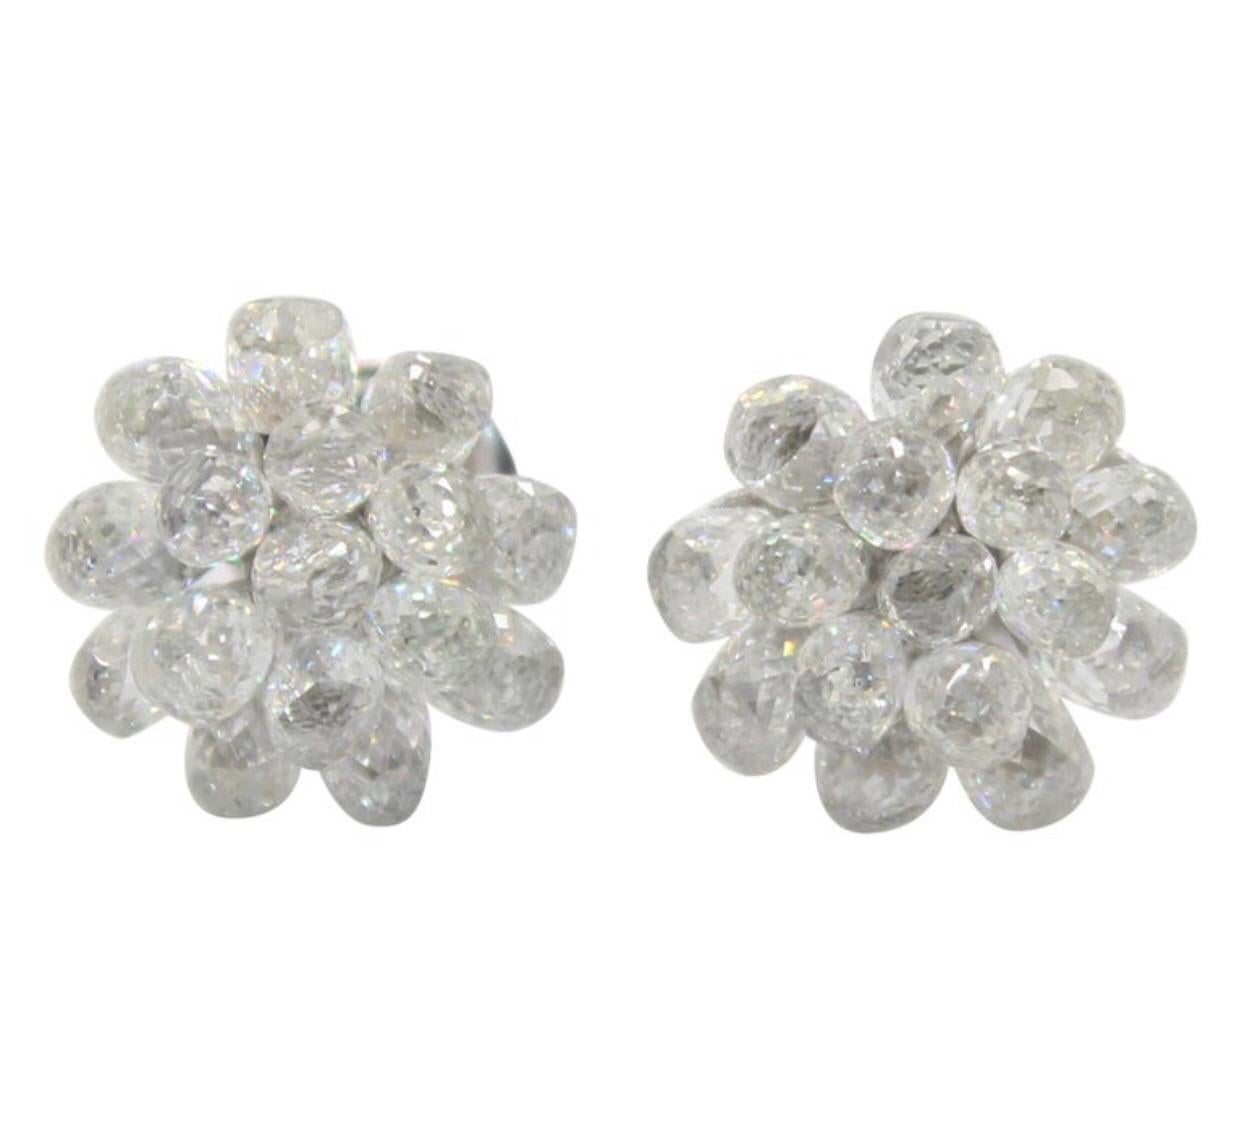 PANIM Diamond Briolette 18k White Gold Stud Earrings For Sale 2